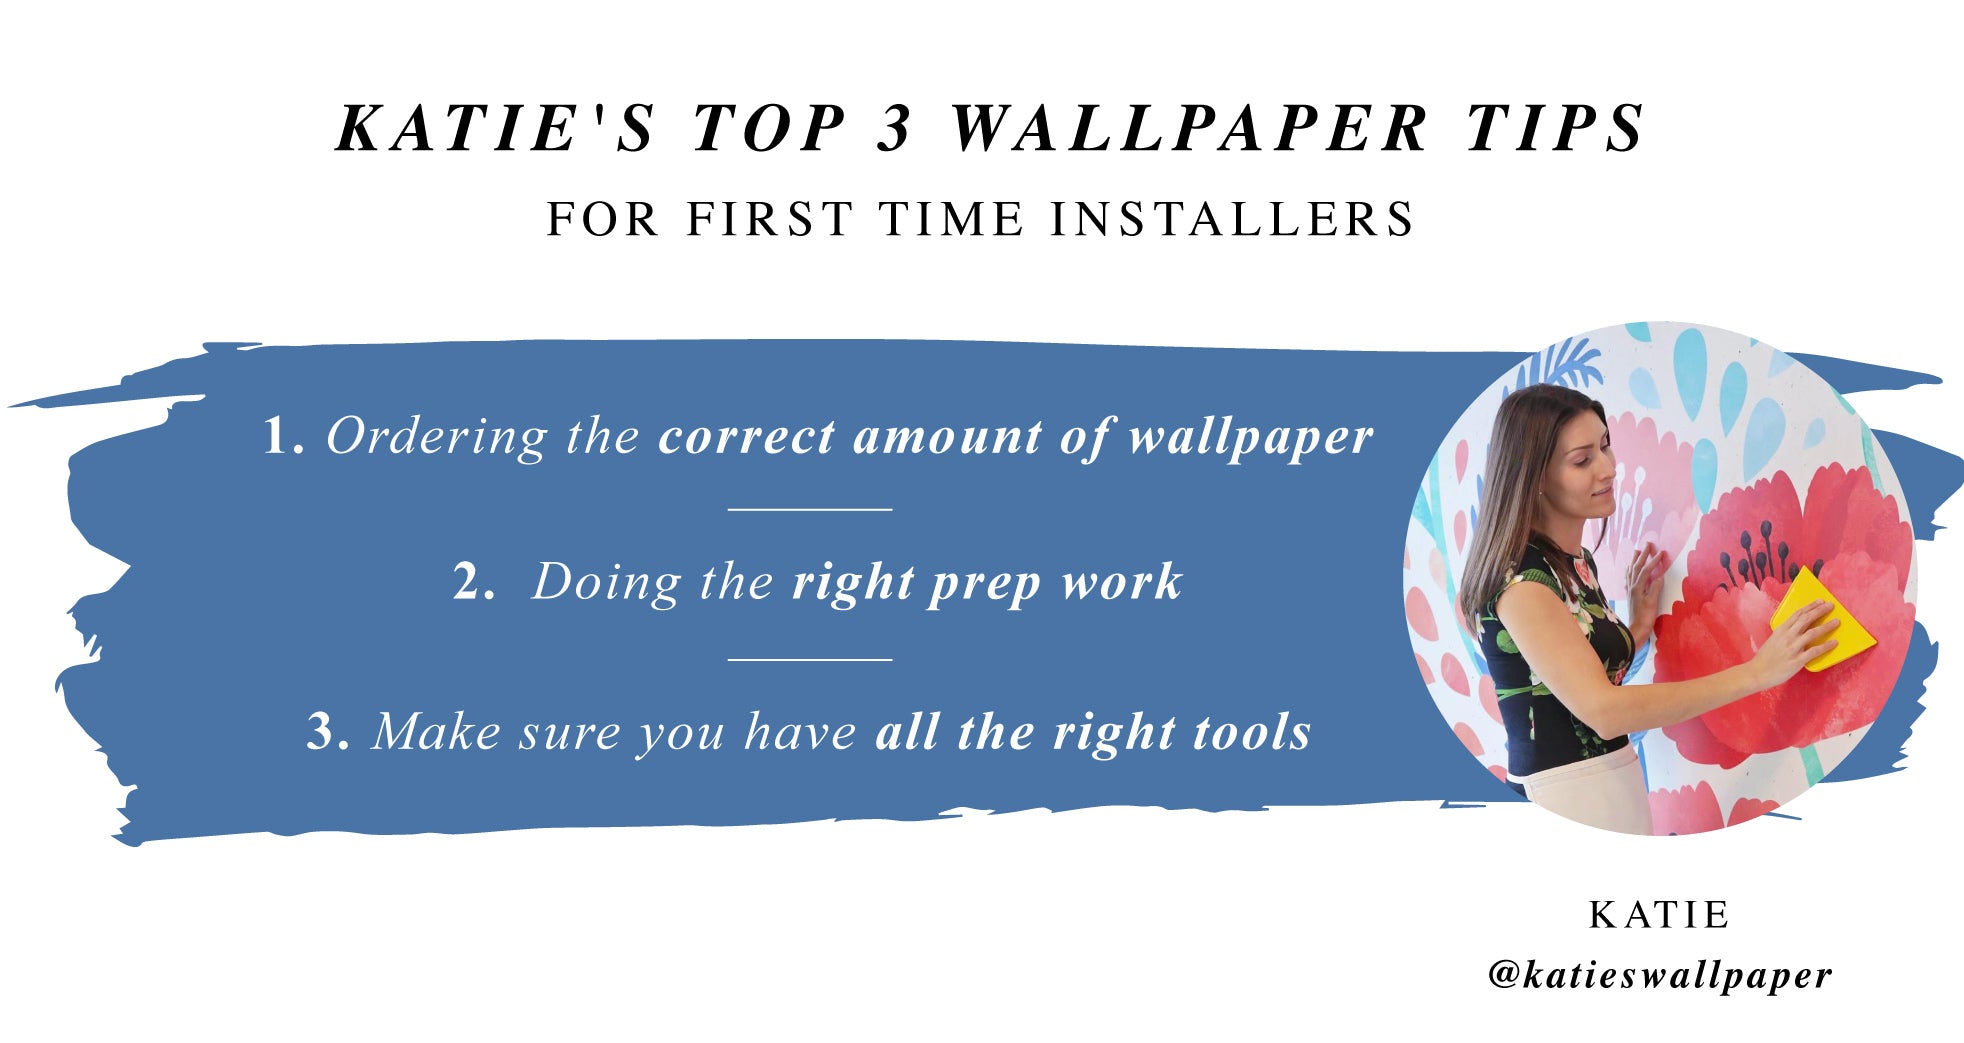 Katie's Top 3 Wallpapering Tips